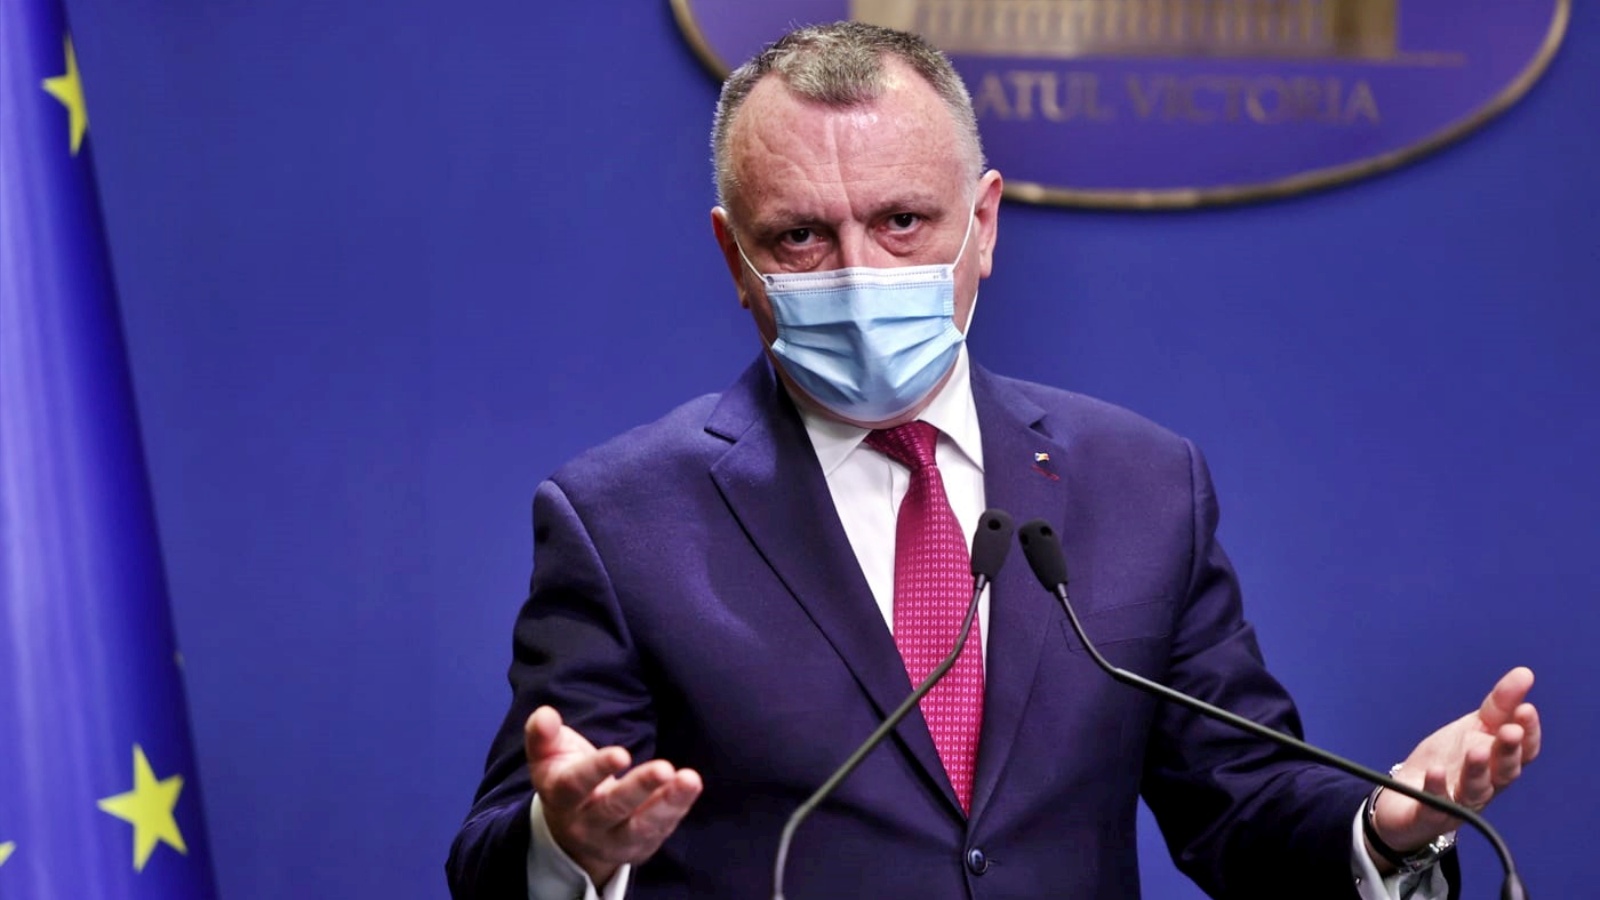 Bildungsminister kündigte Last-Minute-Maßnahmen an rumänische Regierung